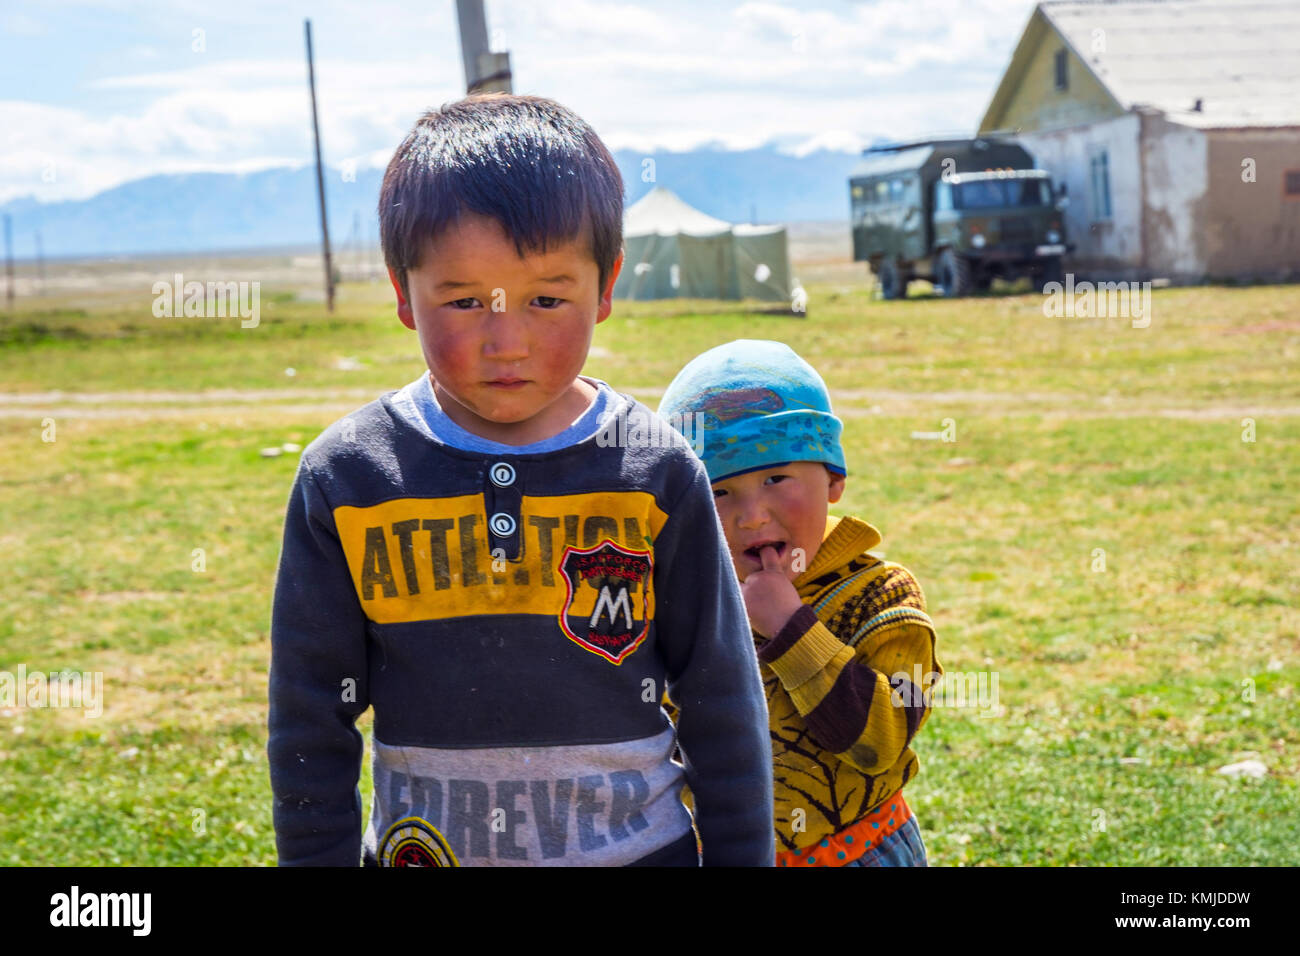 KEL-SUU, KIRGISISTAN - AUGUST 13: Zwei junge Kinder posieren in einem abgelegenen Dorf in Kirgisistan. August 2016 Stockfoto